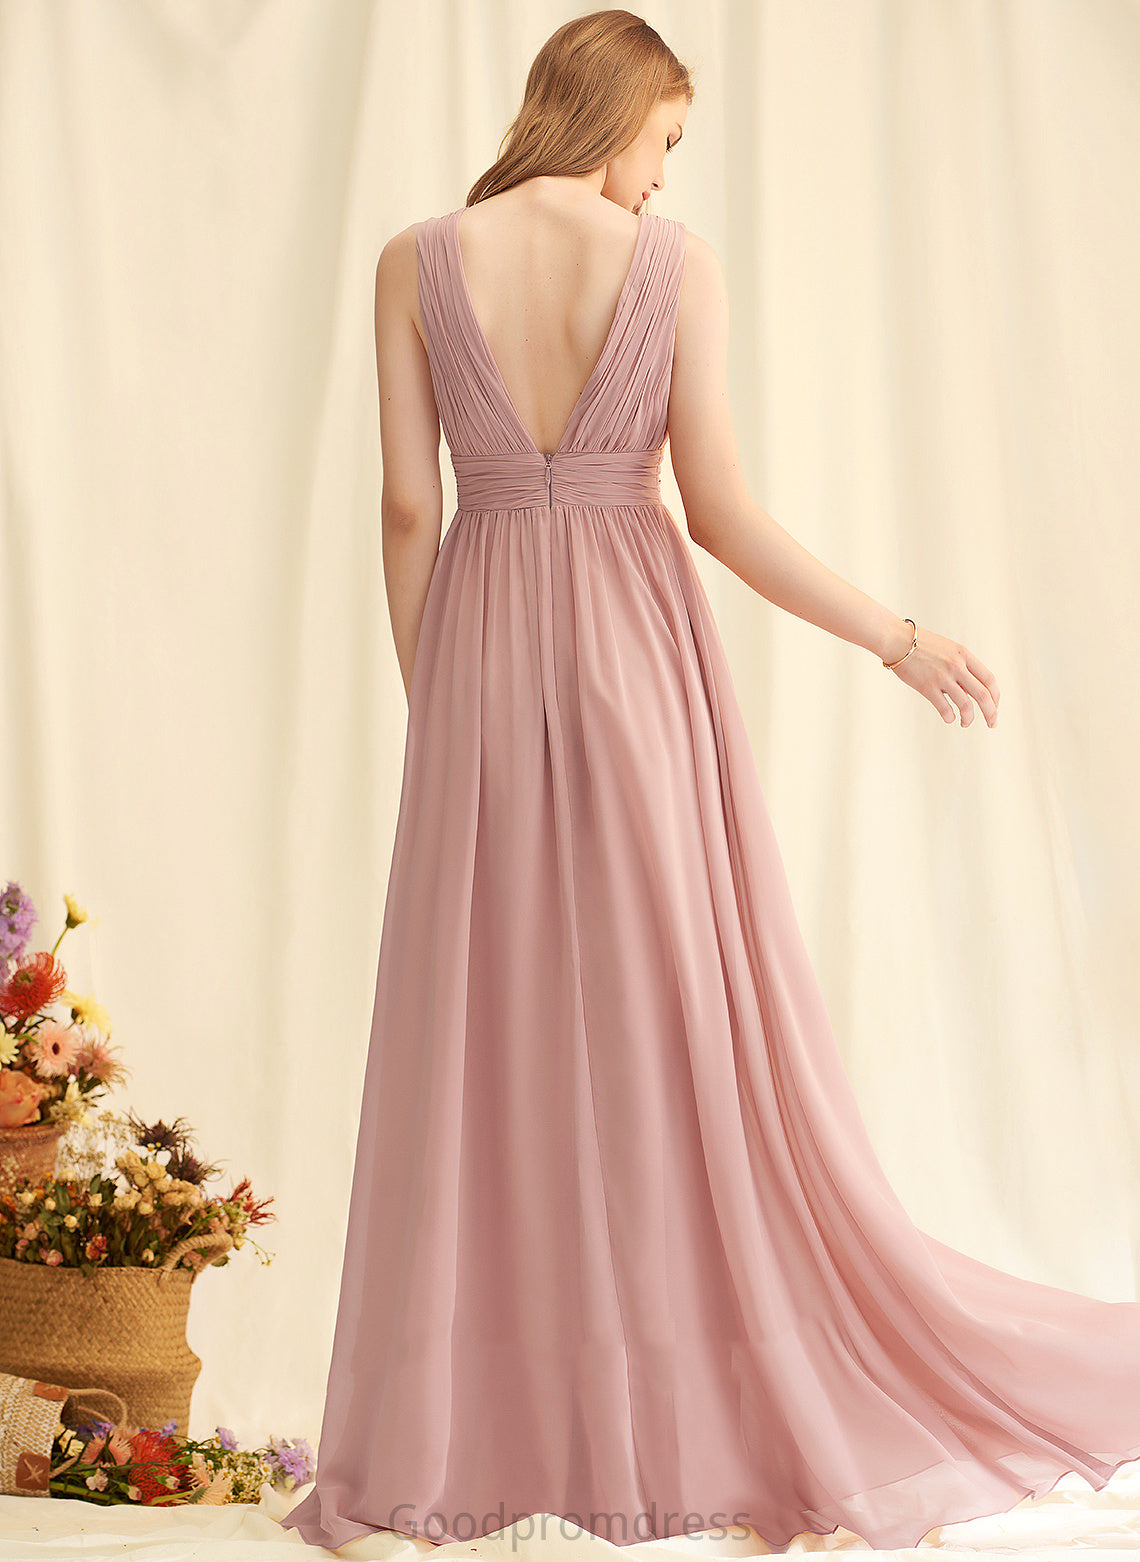 Embellishment Neckline Length V-neck A-Line Silhouette Fabric SplitFront Floor-Length Marie A-Line/Princess Scoop Bridesmaid Dresses